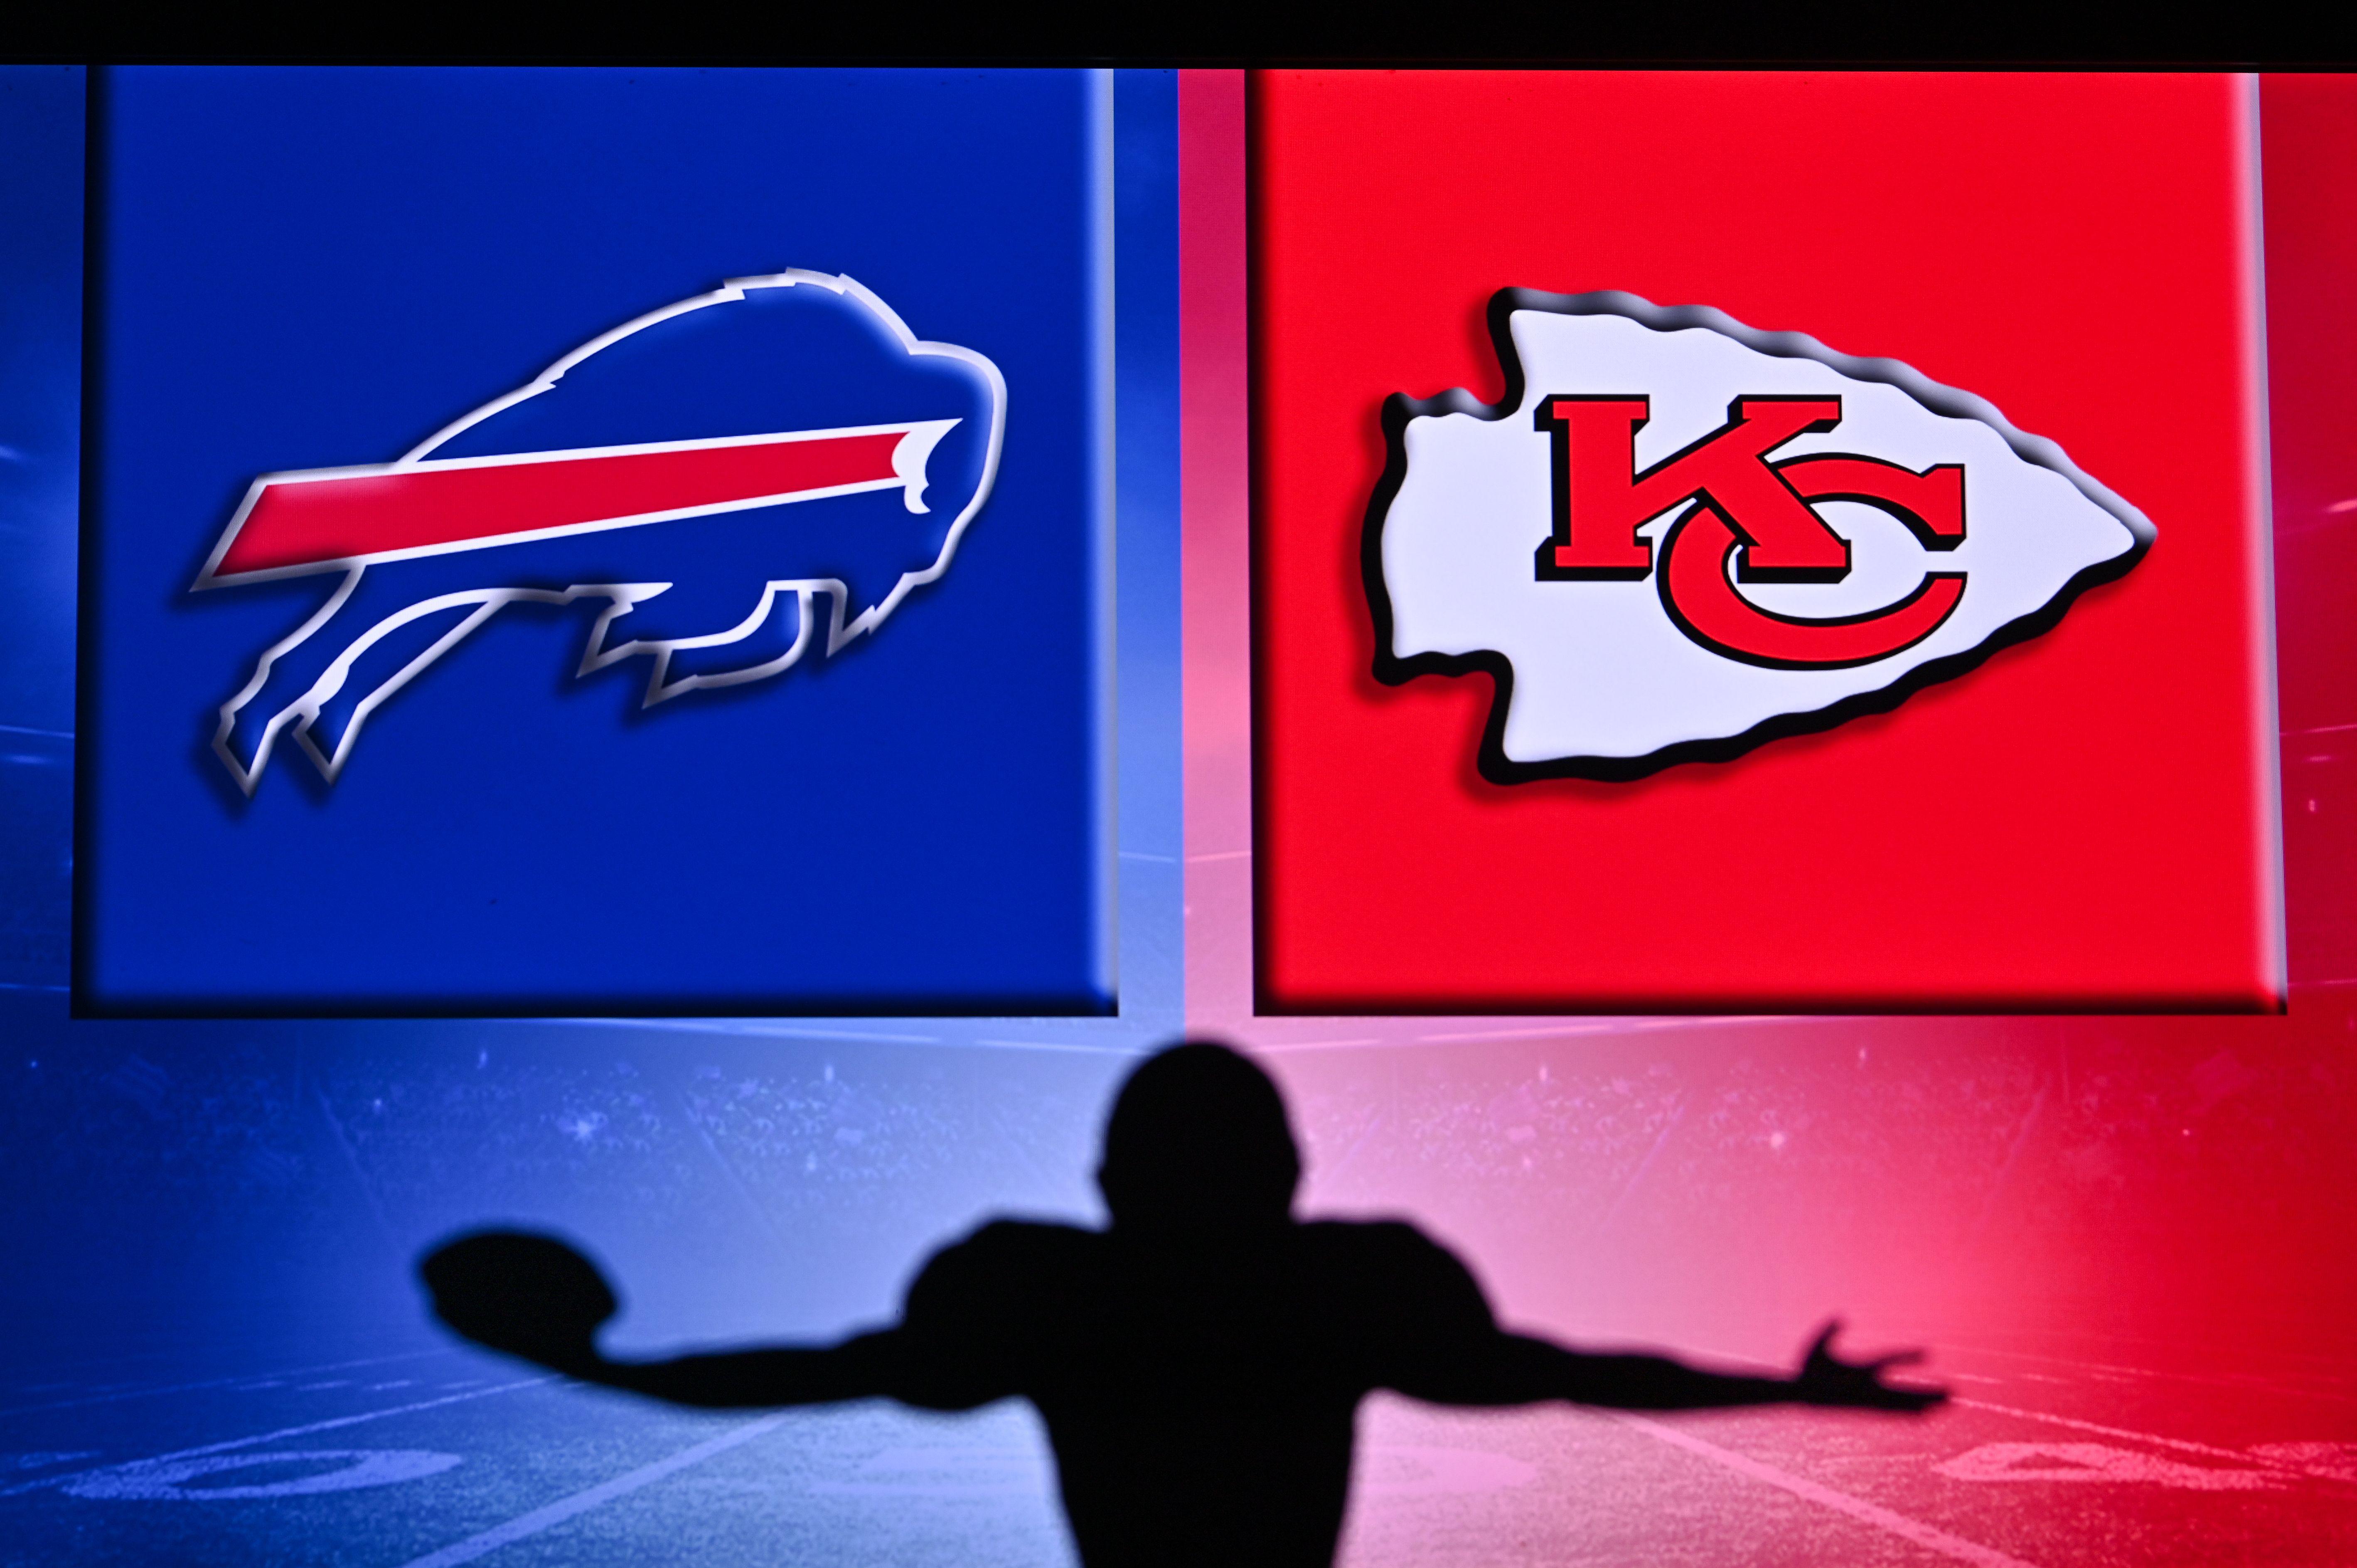 Buffalo Bills logo and the Kansas City Chiefs logo